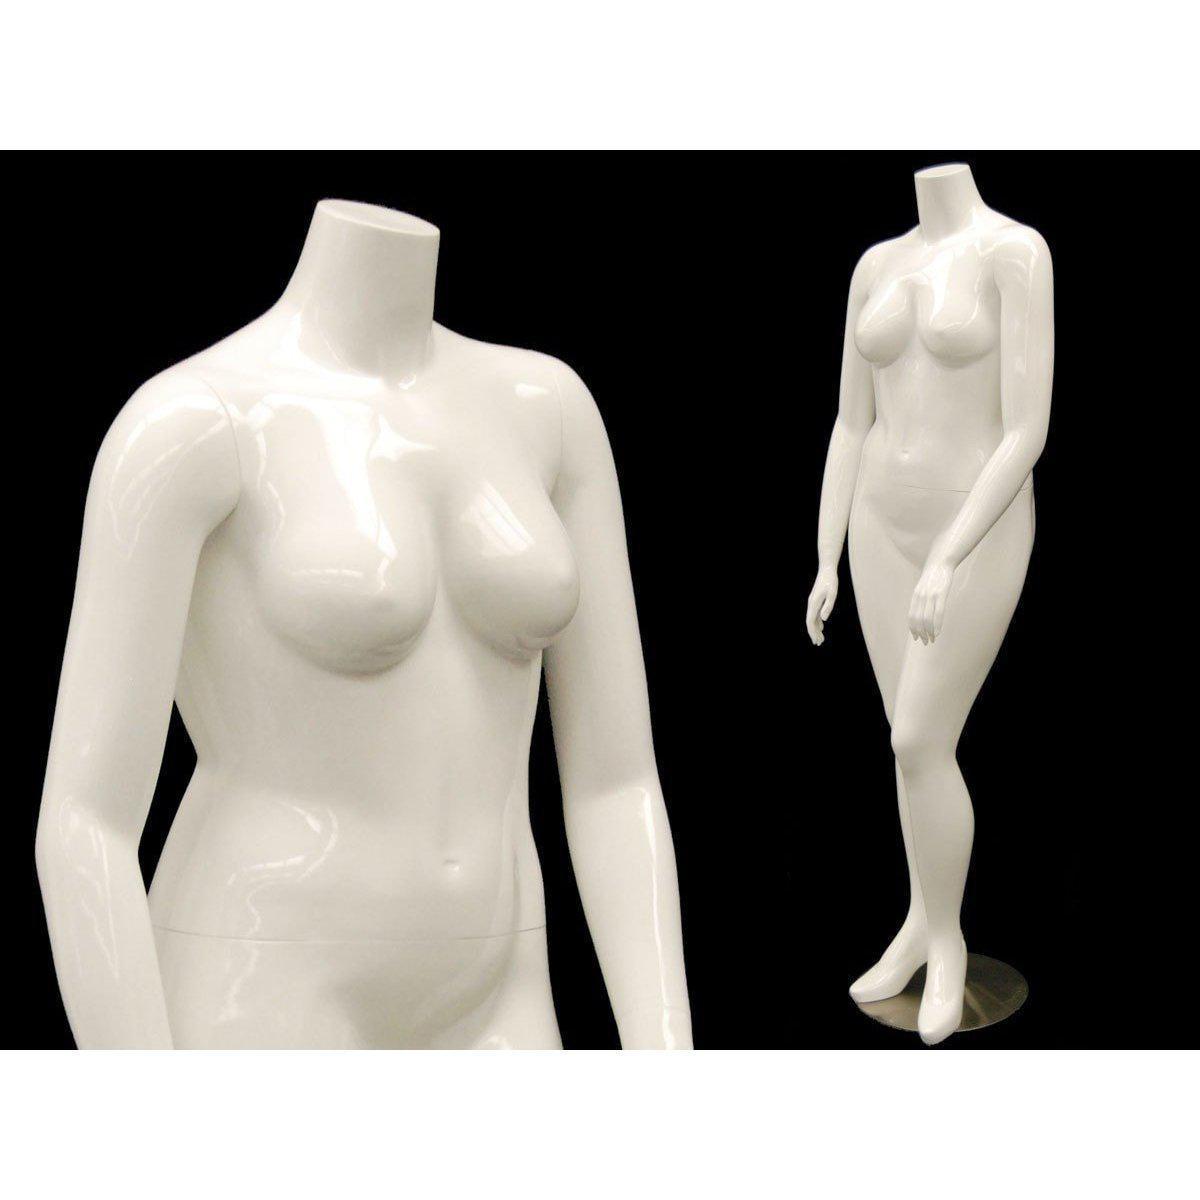 Plus size mannequin woman mannequin xxxl 3